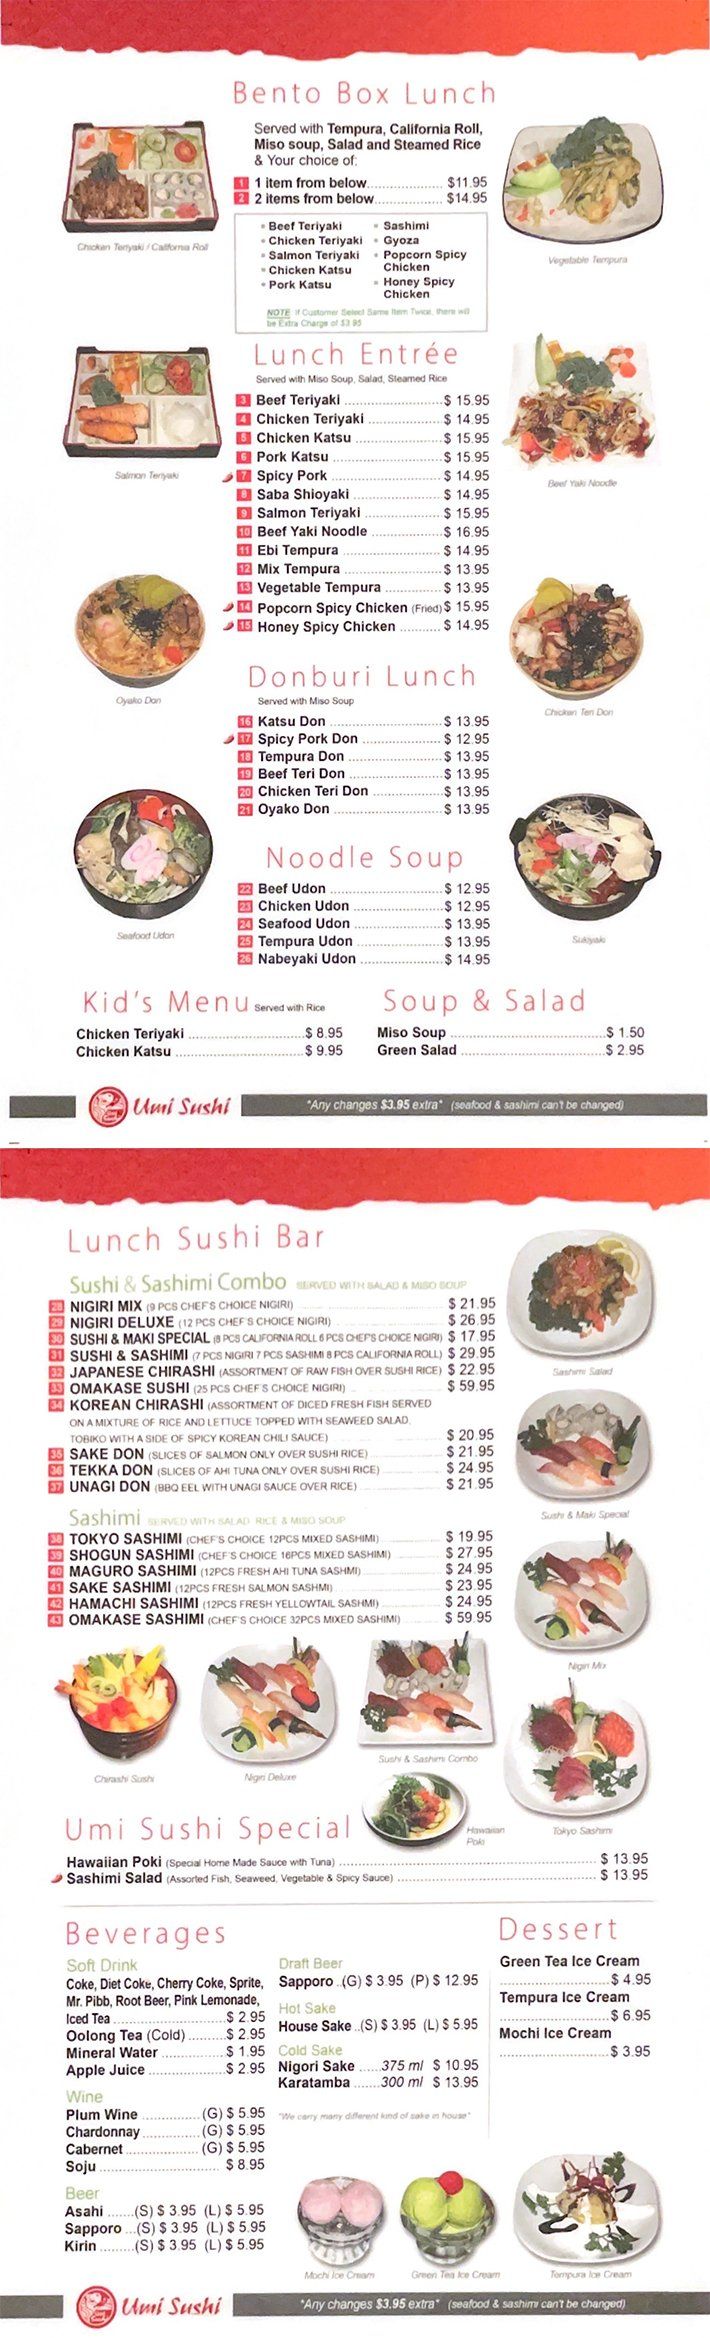 Lunch Menu | Modesto, CA | Umi Sushi | 209-622-0806